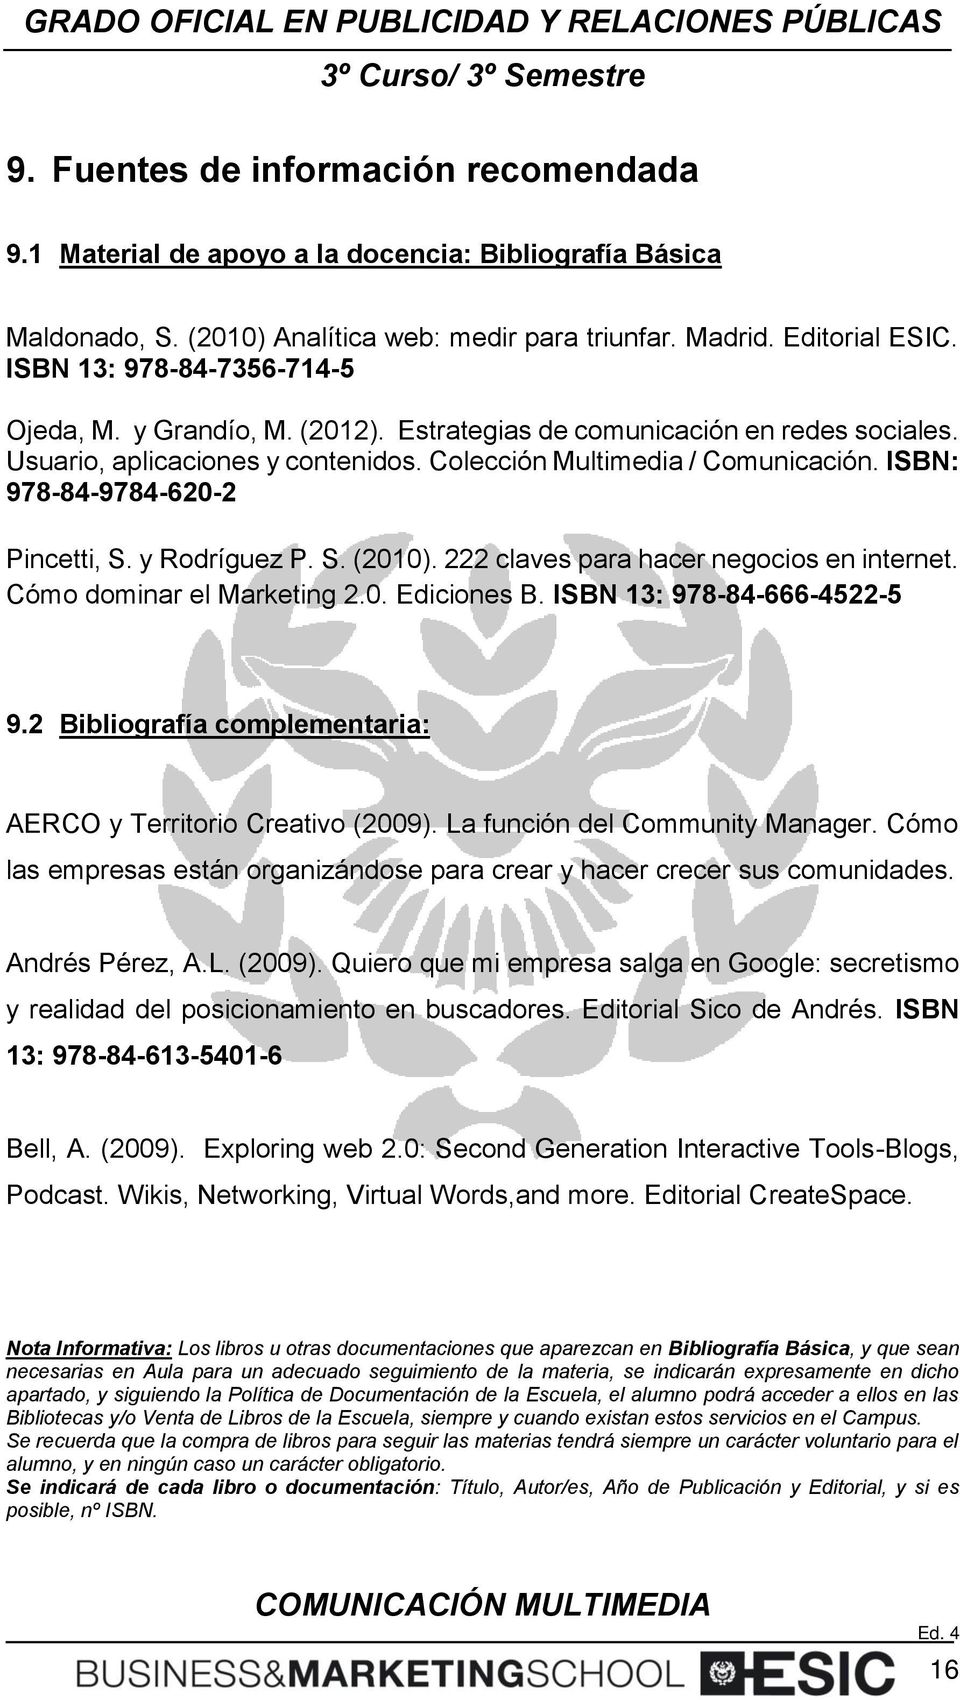 ISBN: 978-84-9784-620-2 Pincetti, S. y Rodríguez P. S. (2010). 222 claves para hacer negocios en internet. Cómo dominar el Marketing 2.0. Ediciones B. ISBN 13: 978-84-666-4522-5 9.